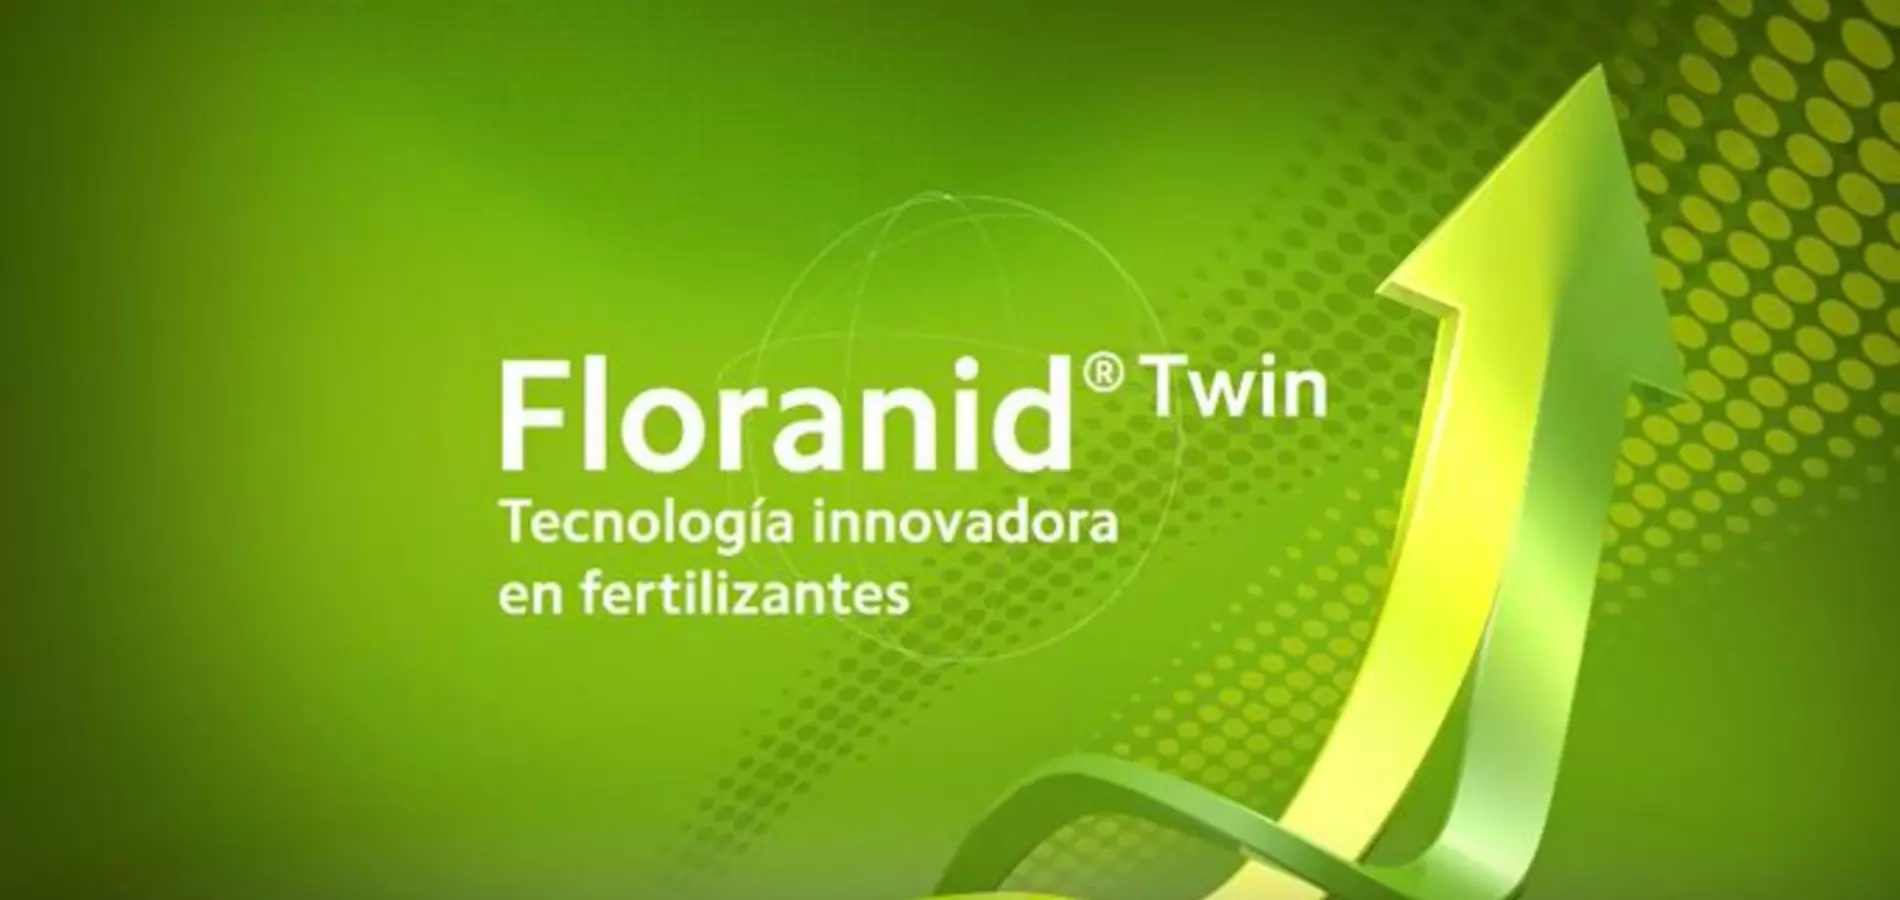 ¿Por qué hemos evolucionado Floranid® a Floranid® Twin?